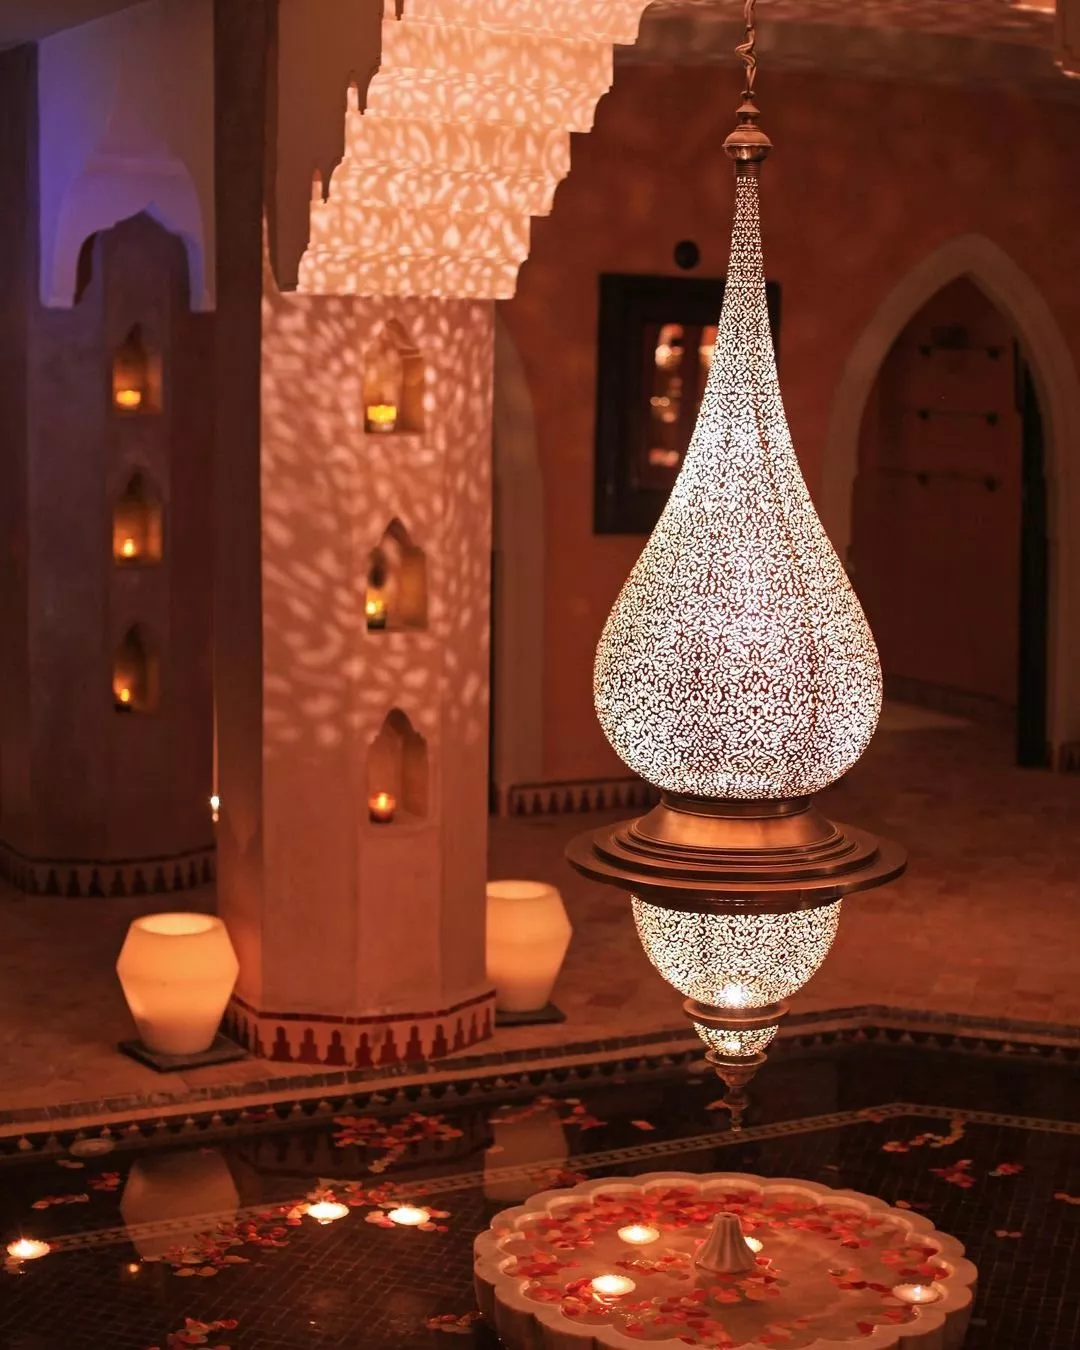 فوائد الحمام المغربي: منافع جمالية وصحية في الوقت نفسه